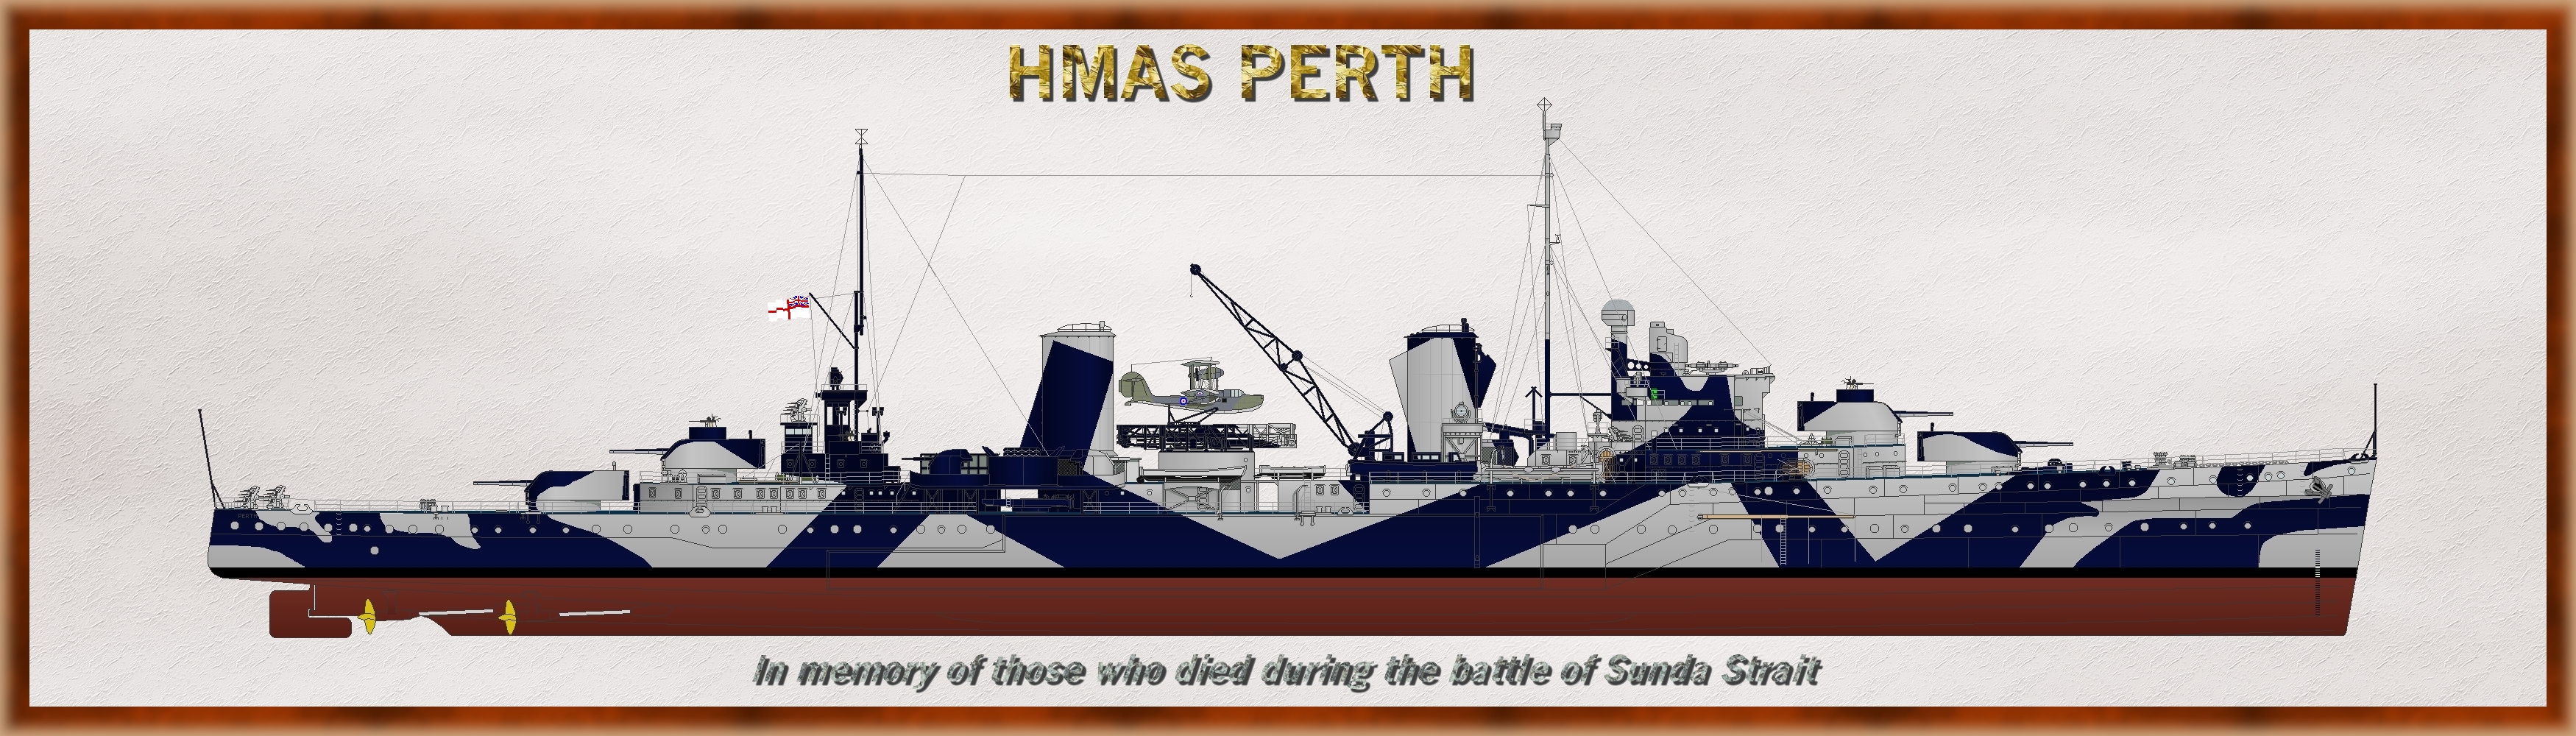 Perth-1942